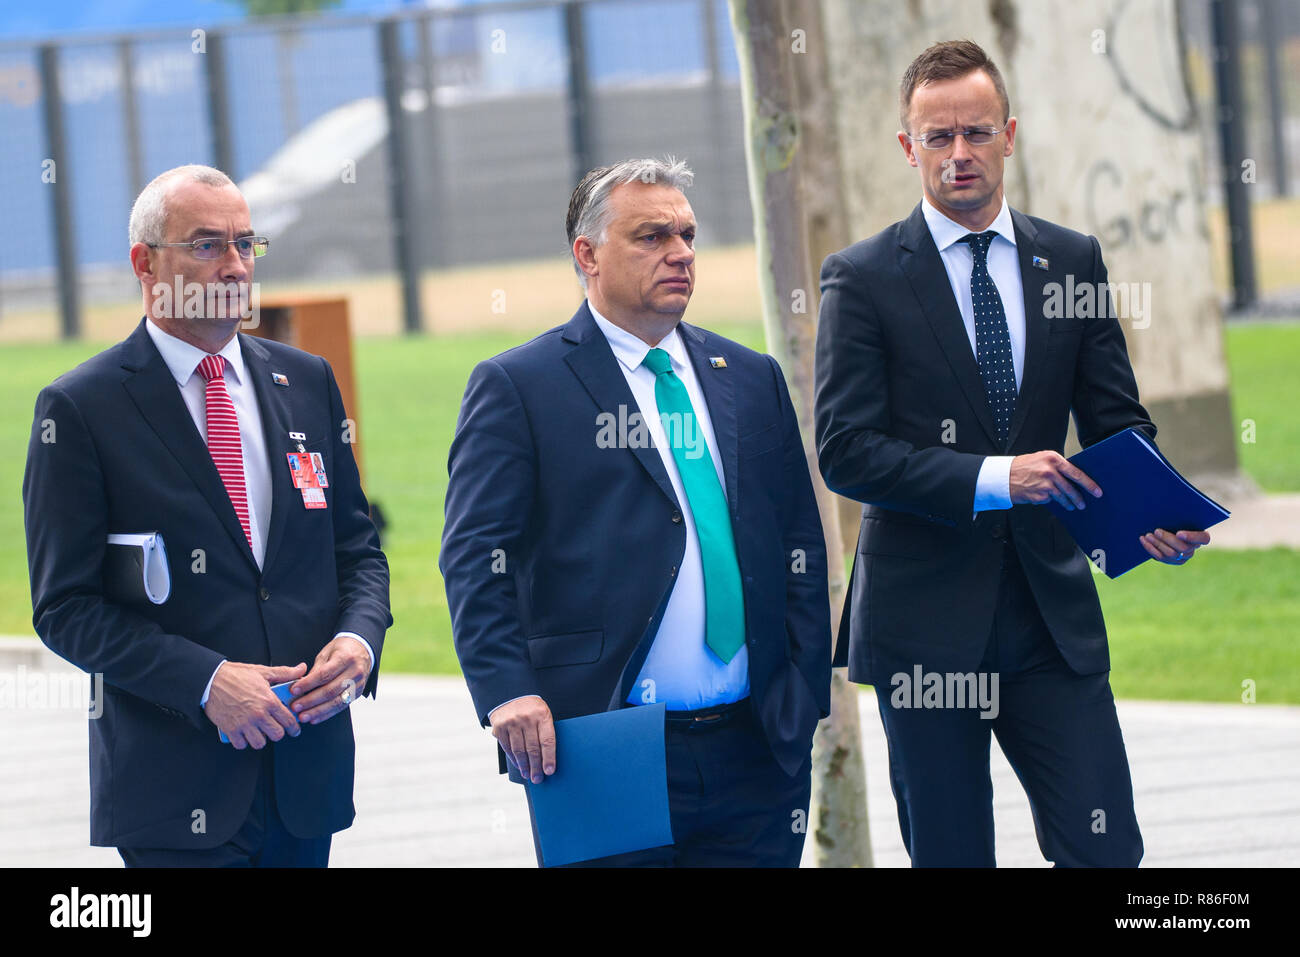 12.07.2018. Bruxelles, Belgio. I leader del mondo arrivando alla NATO (Organizzazione del Trattato del Nord Atlantico) Summit 2018 Foto Stock